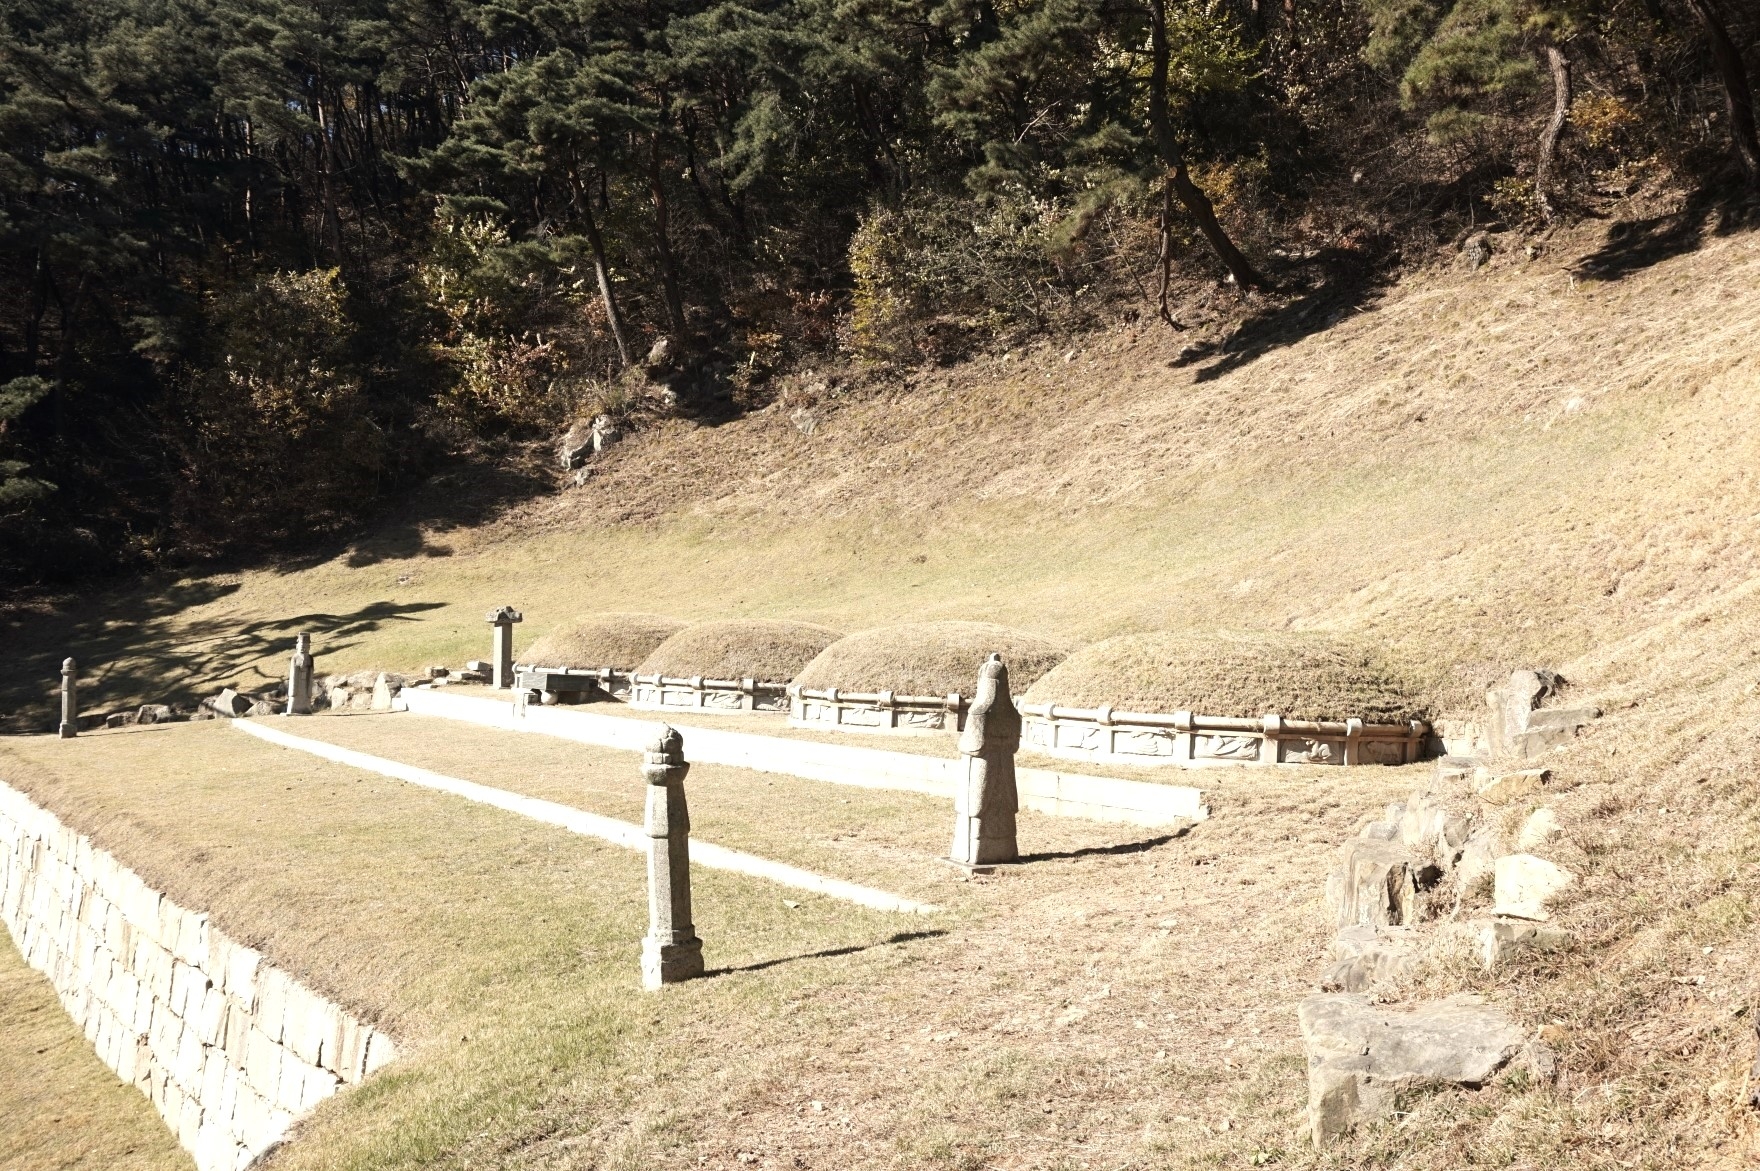 김충선 무덤. 녹동서원 뒤로 난 산길을 500m 남짓 오르면 나타난다. 삼정산(三頂山) 은 이름처럼 3개의 봉우리로 이뤄졌는데, 그 중심에 김충선의 무덤이 있다고 한다.